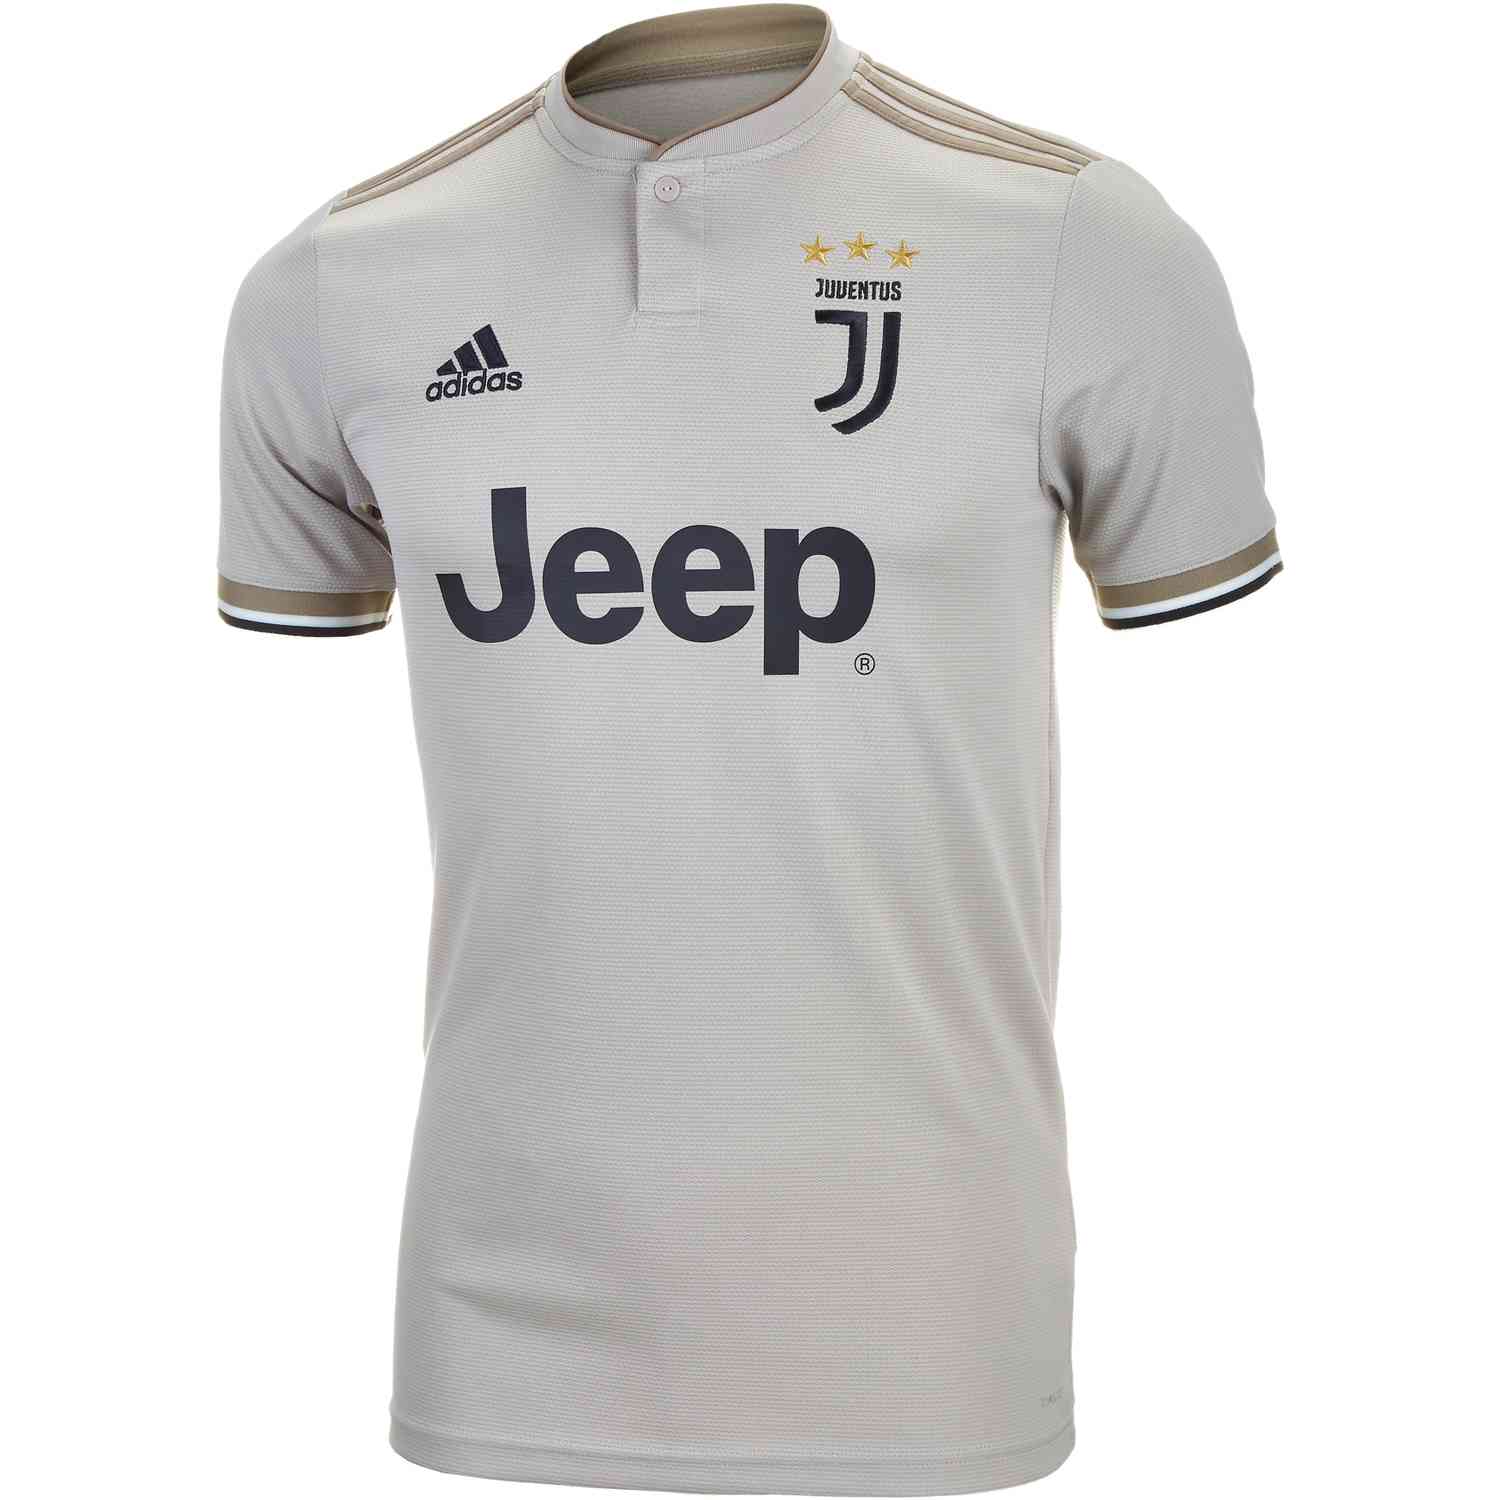 2018/19 adidas Juventus Away Jersey - Soccer Master